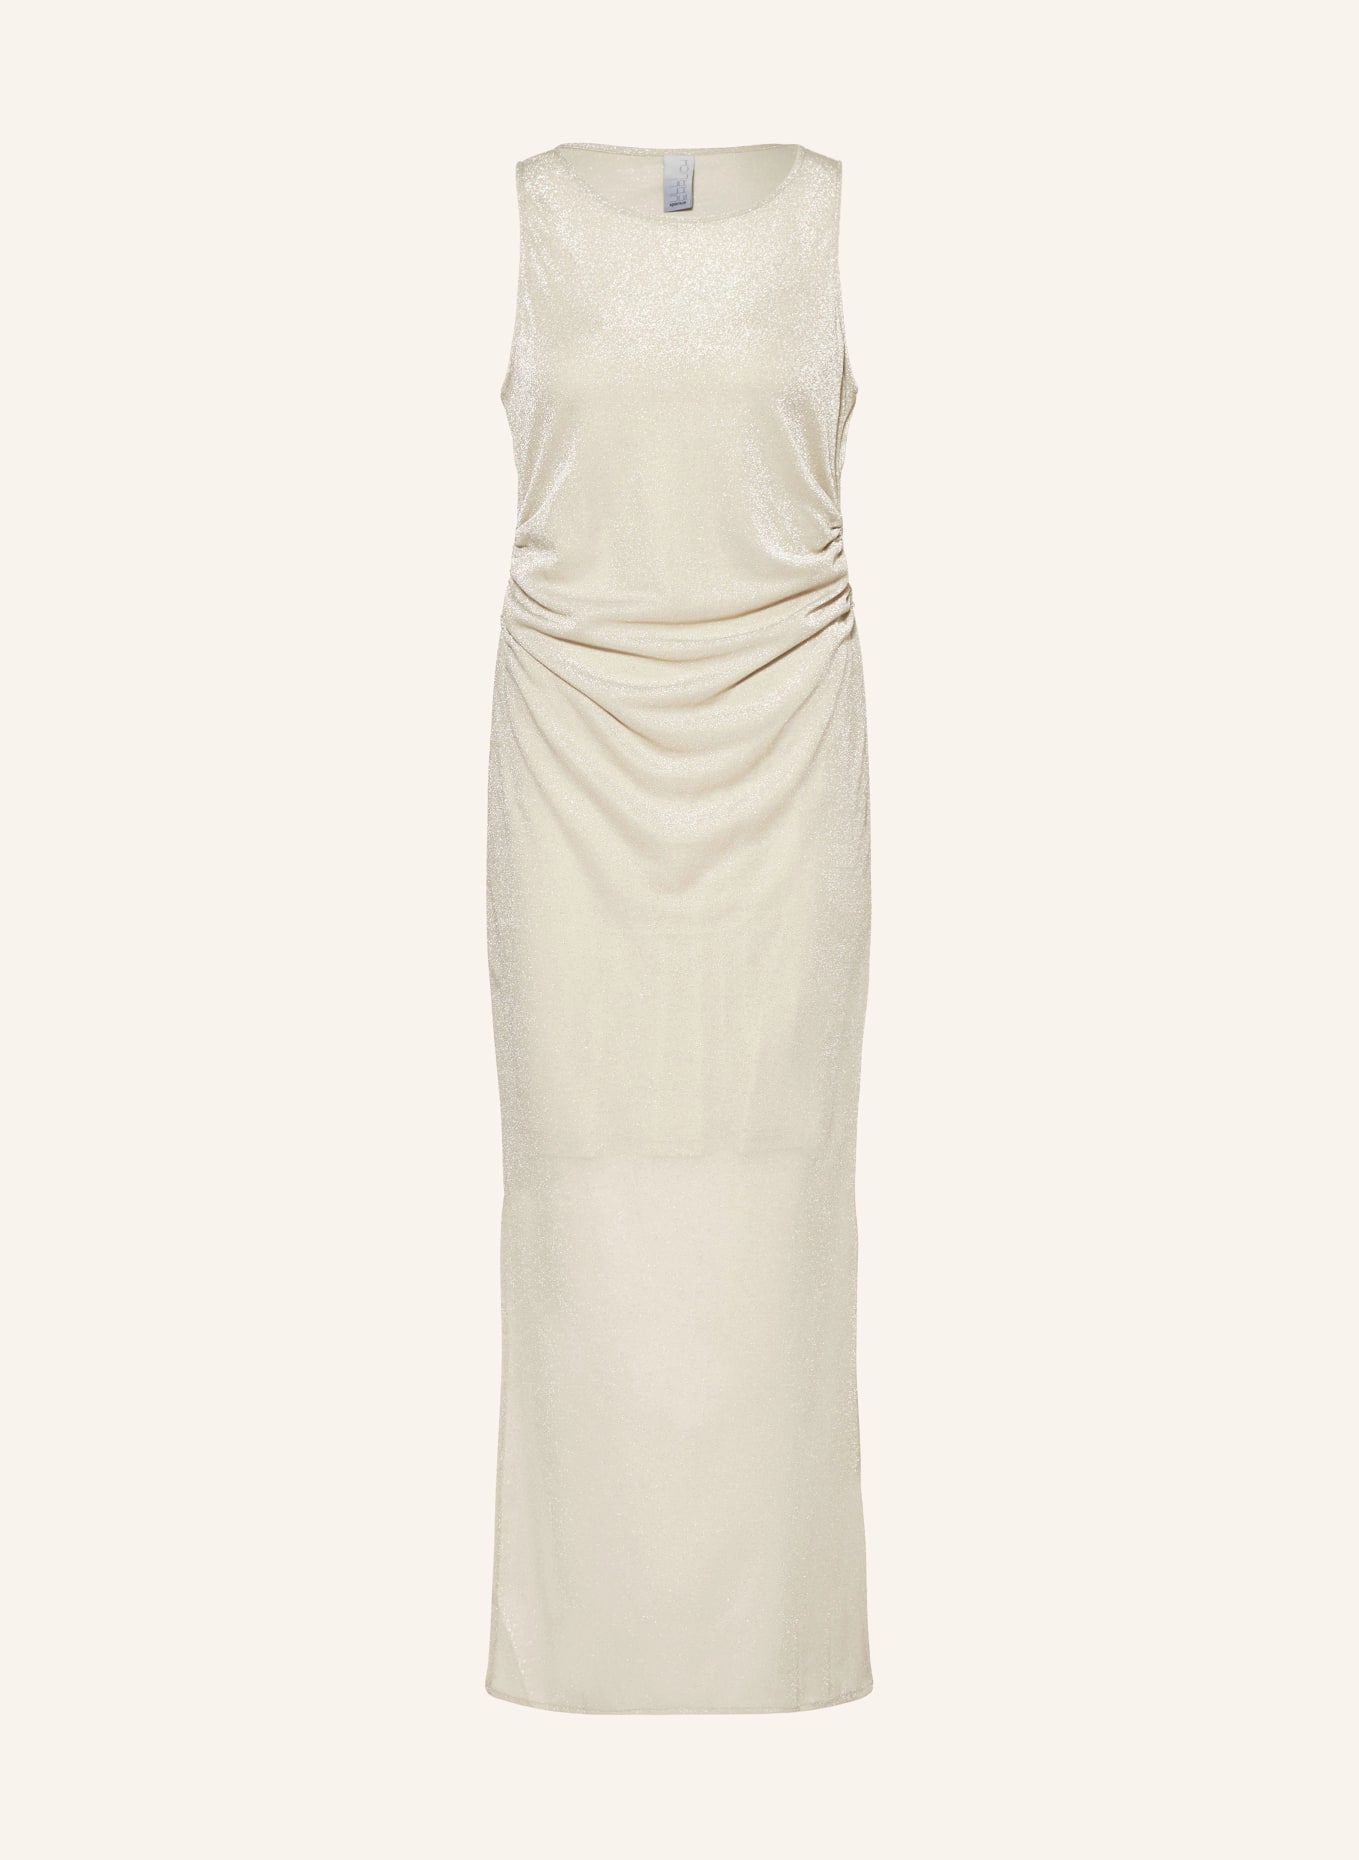 ULLI EHRLICH SPORTALM Kleid, Farbe: CREME (Bild 1)